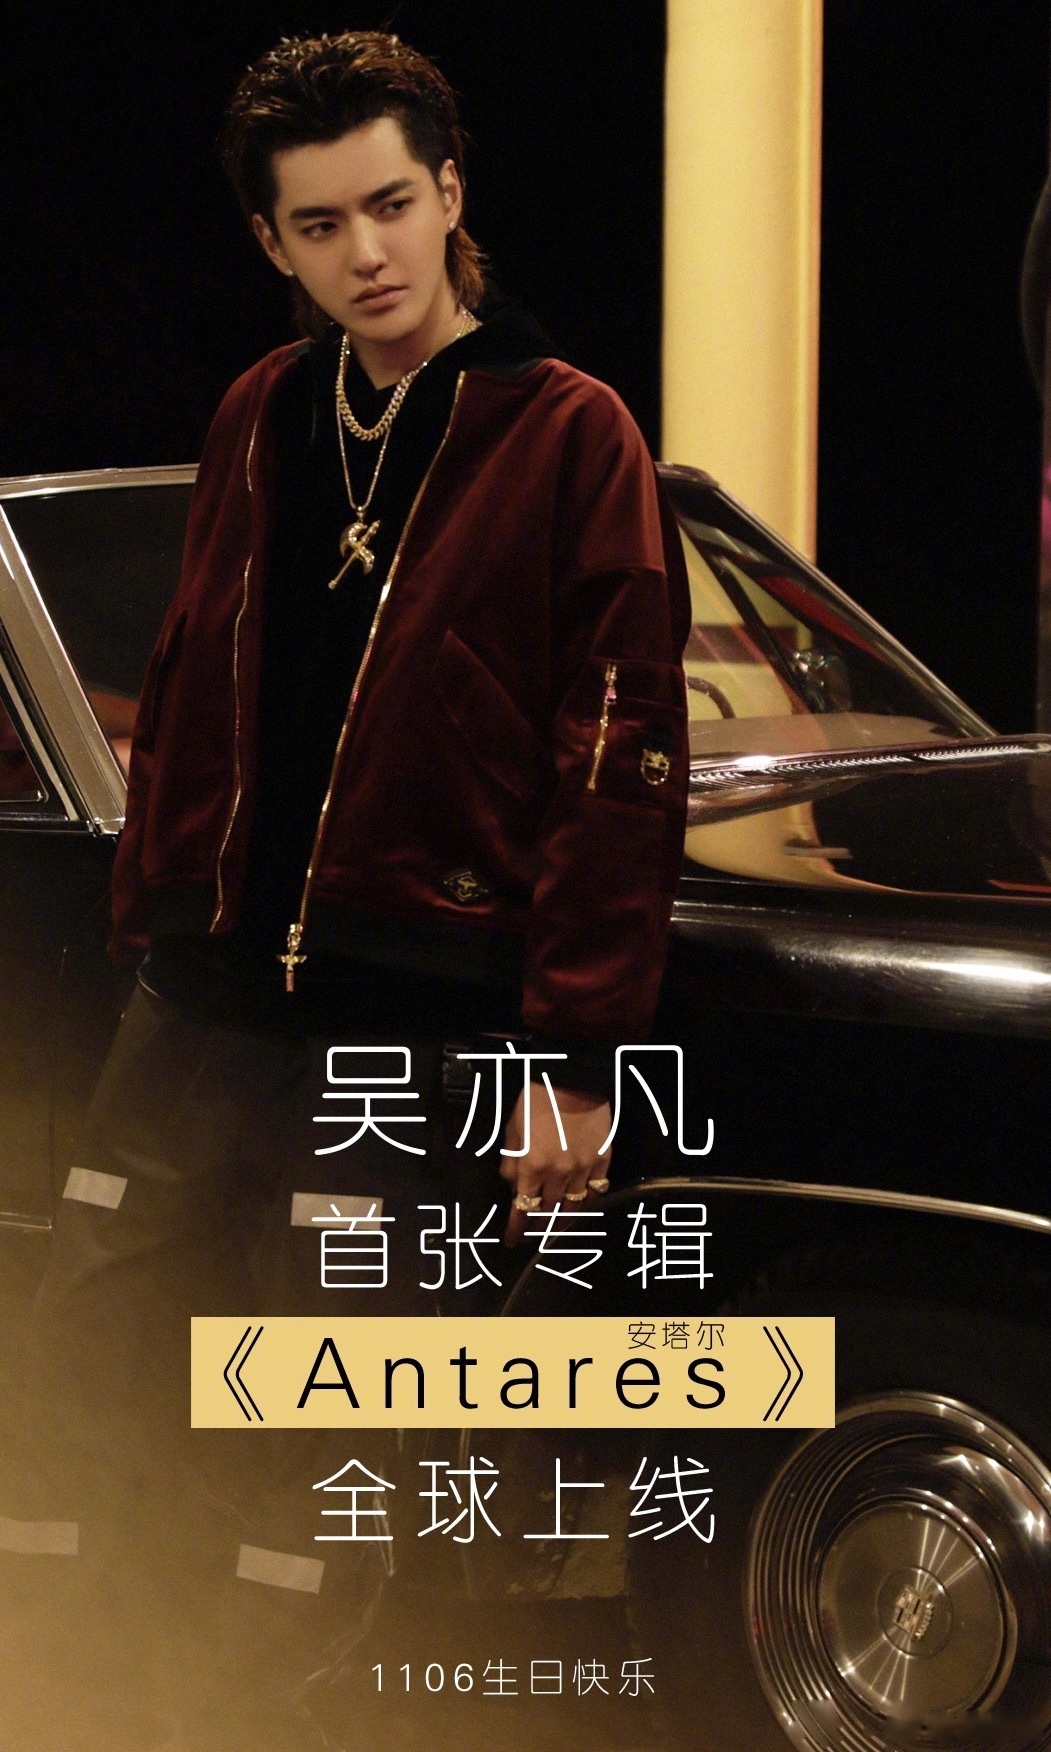 今天是吴亦凡的生日,也是吴亦凡首张专辑《antares》全网上线的日子